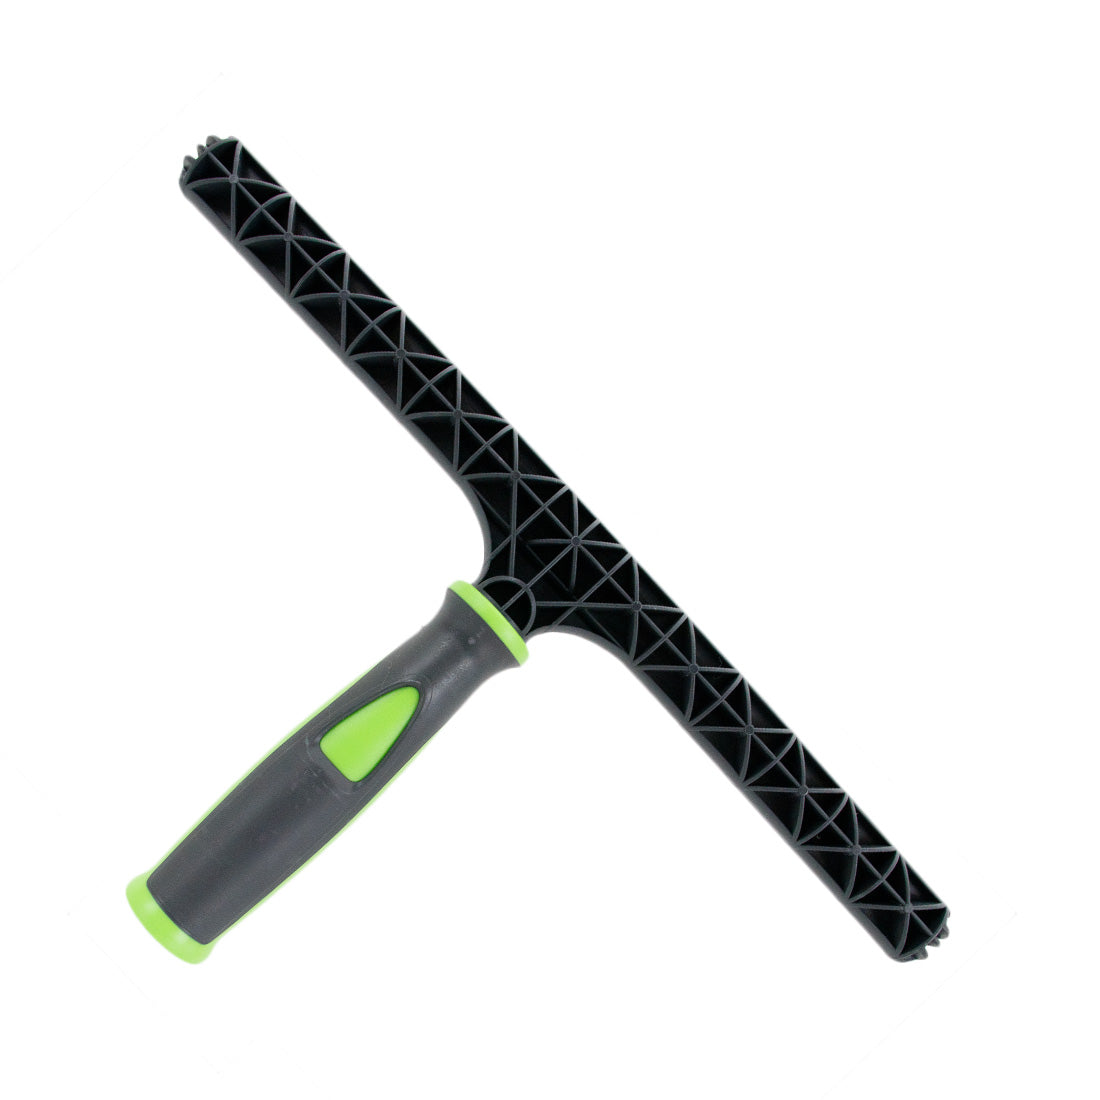 Pulex Swivel T-Bar, Window Cleaning Tools